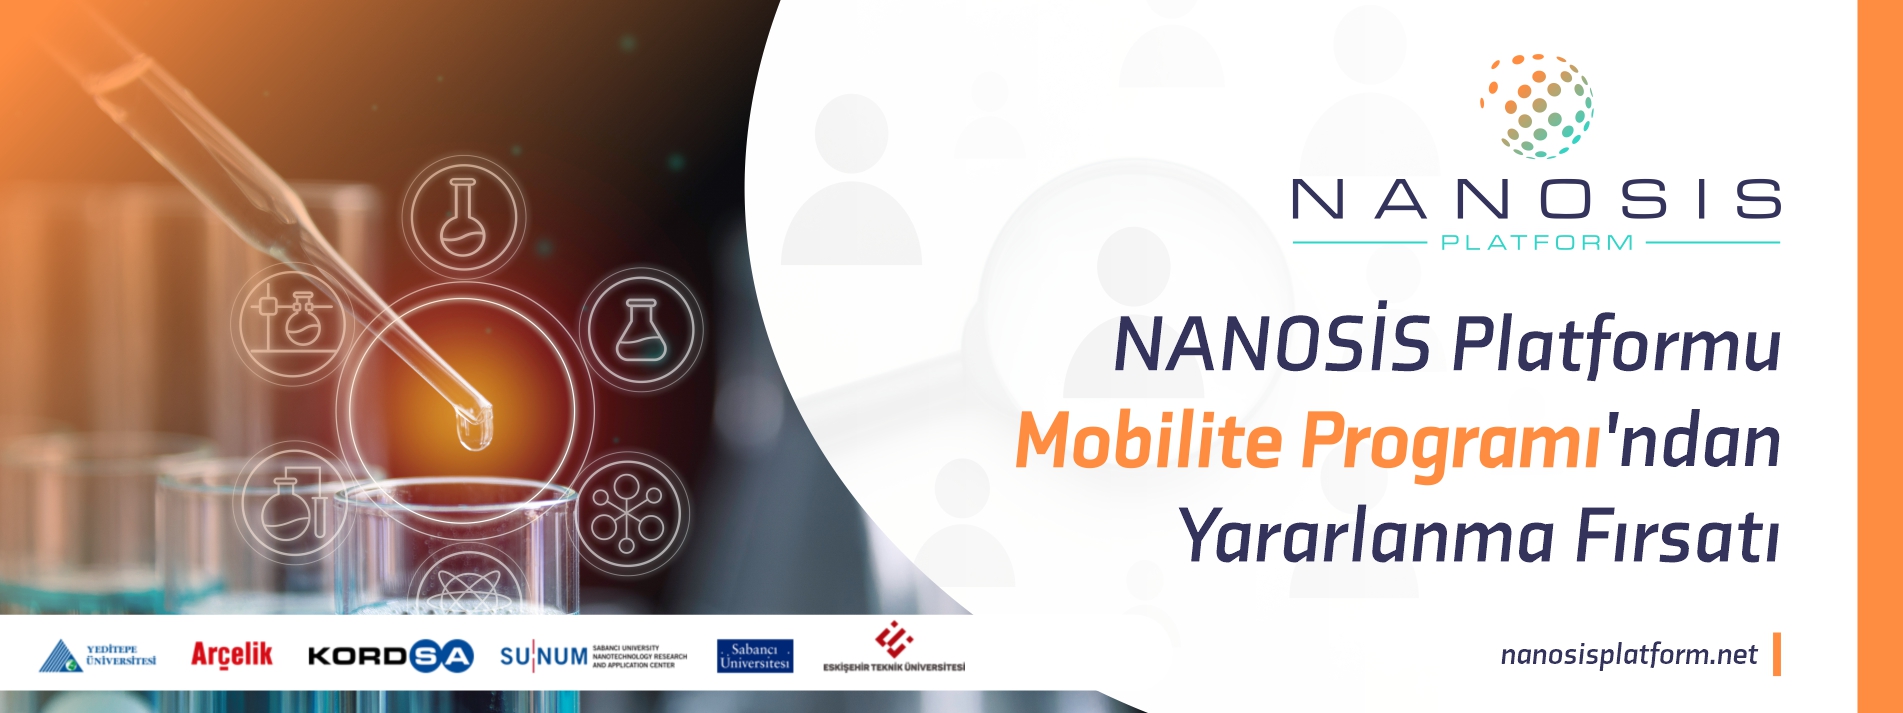 NANOSİS Platformu Mobilite Programından Yararlanma Fırsatı